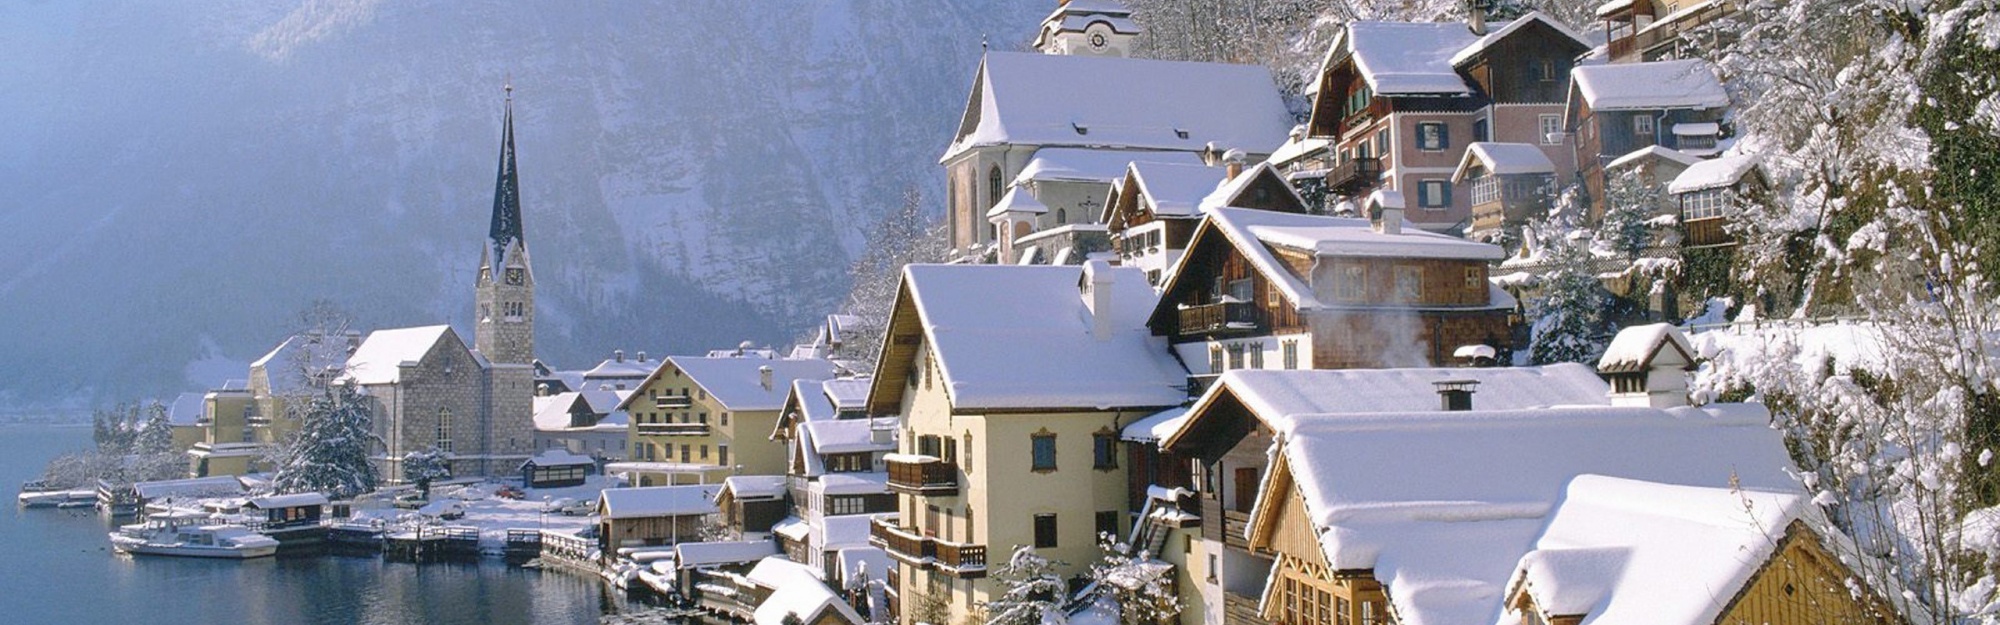 Hallstatt Austria Winter Village Salzkammergut Resort Mountains